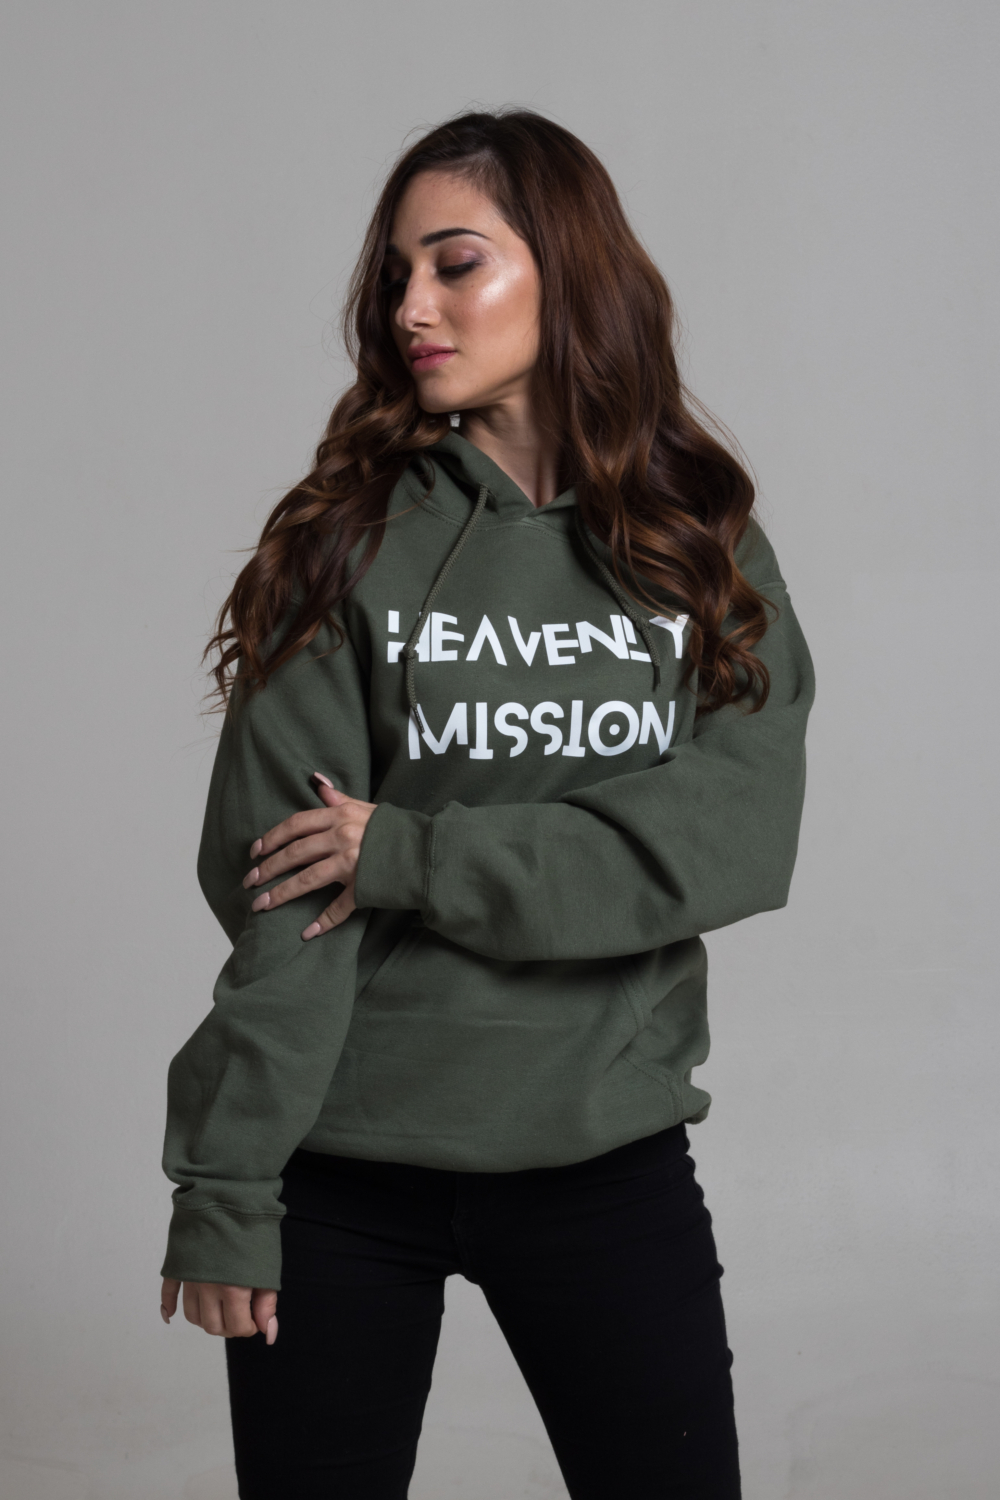 heavenly mission keresztény pulóver